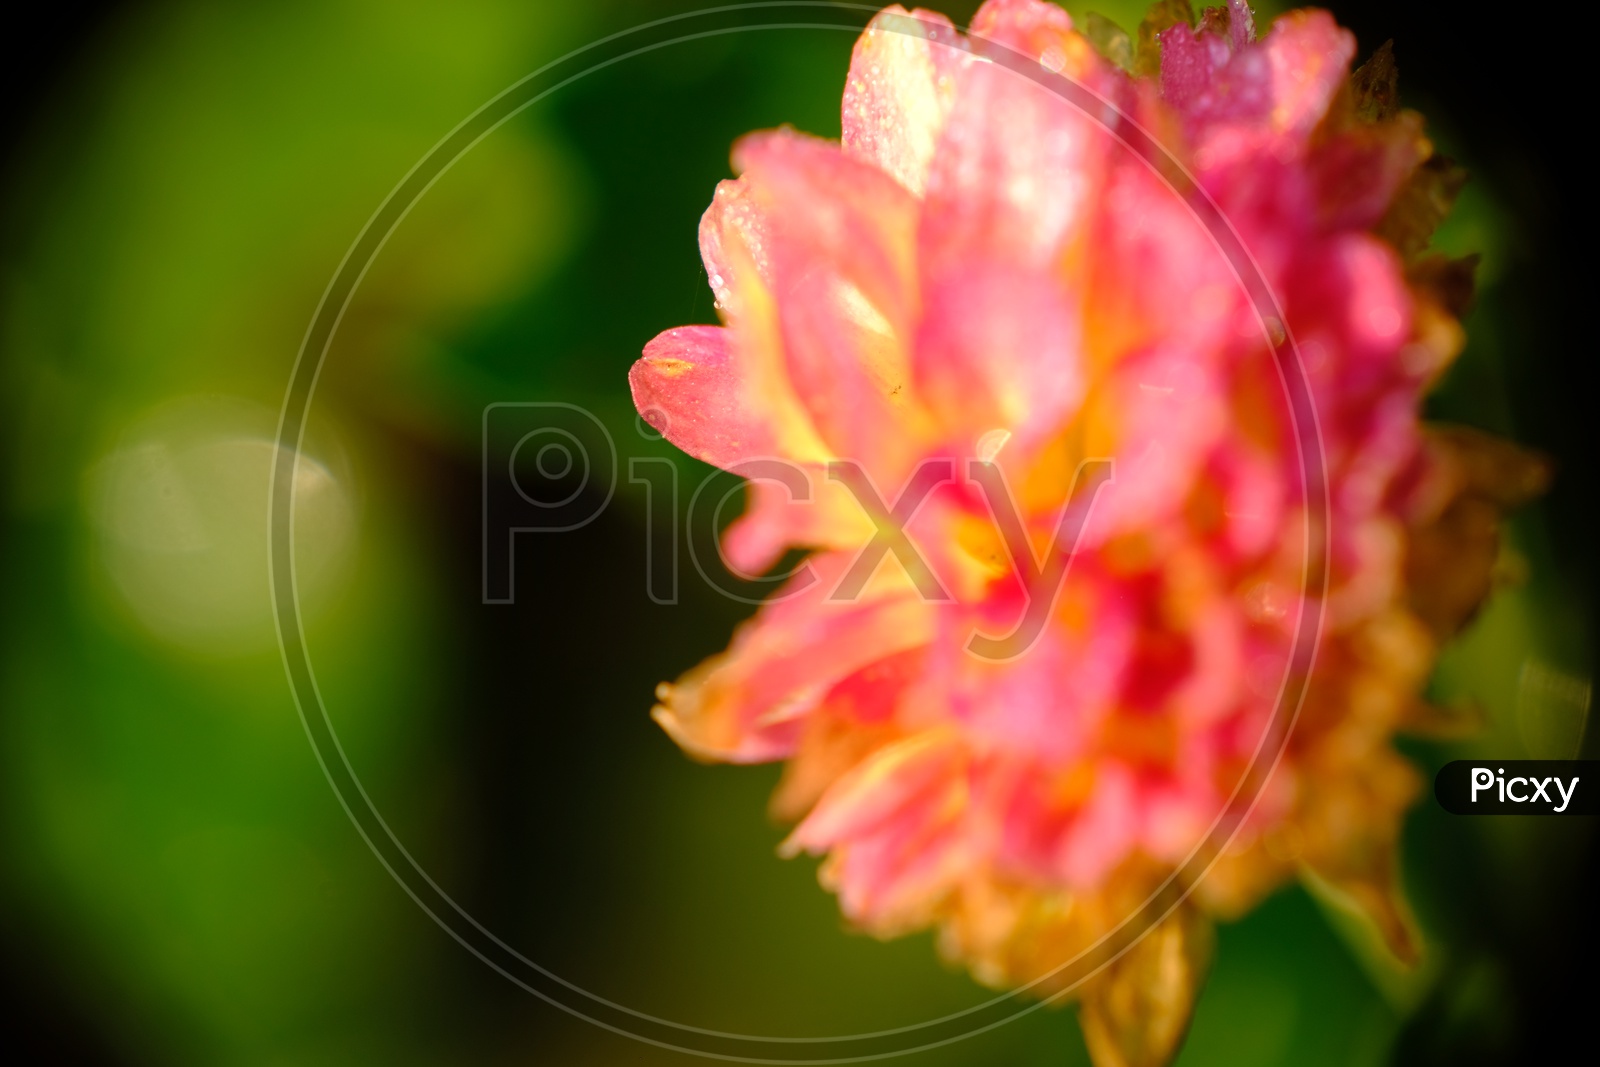 Close Up Shot of a Flower